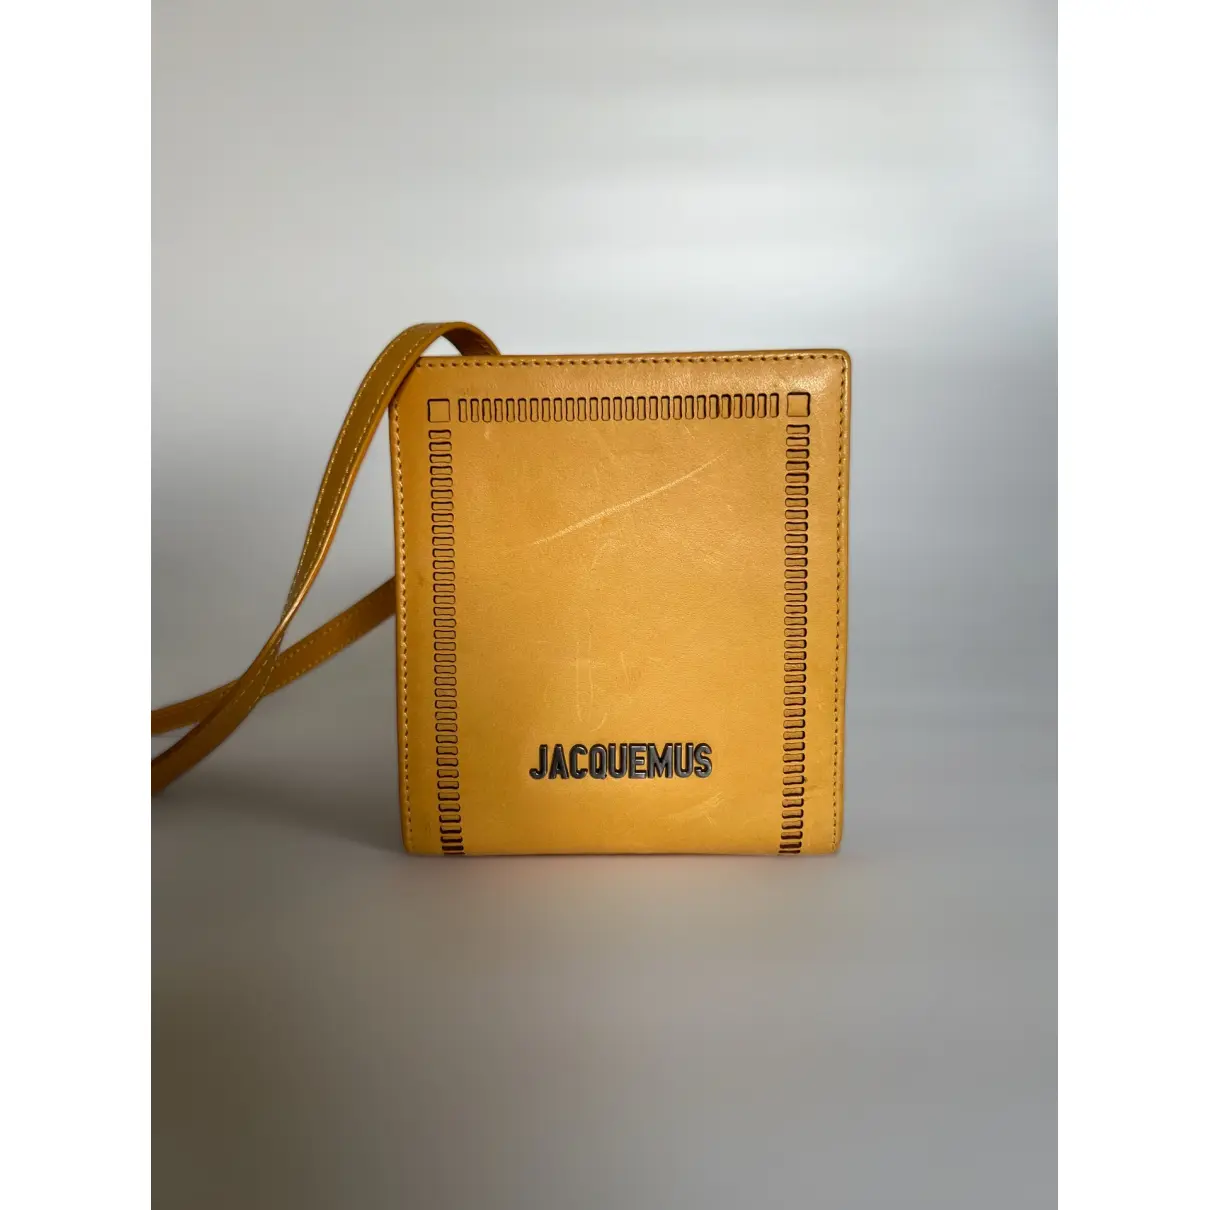 Buy Jacquemus Le Gadjo leather bag online